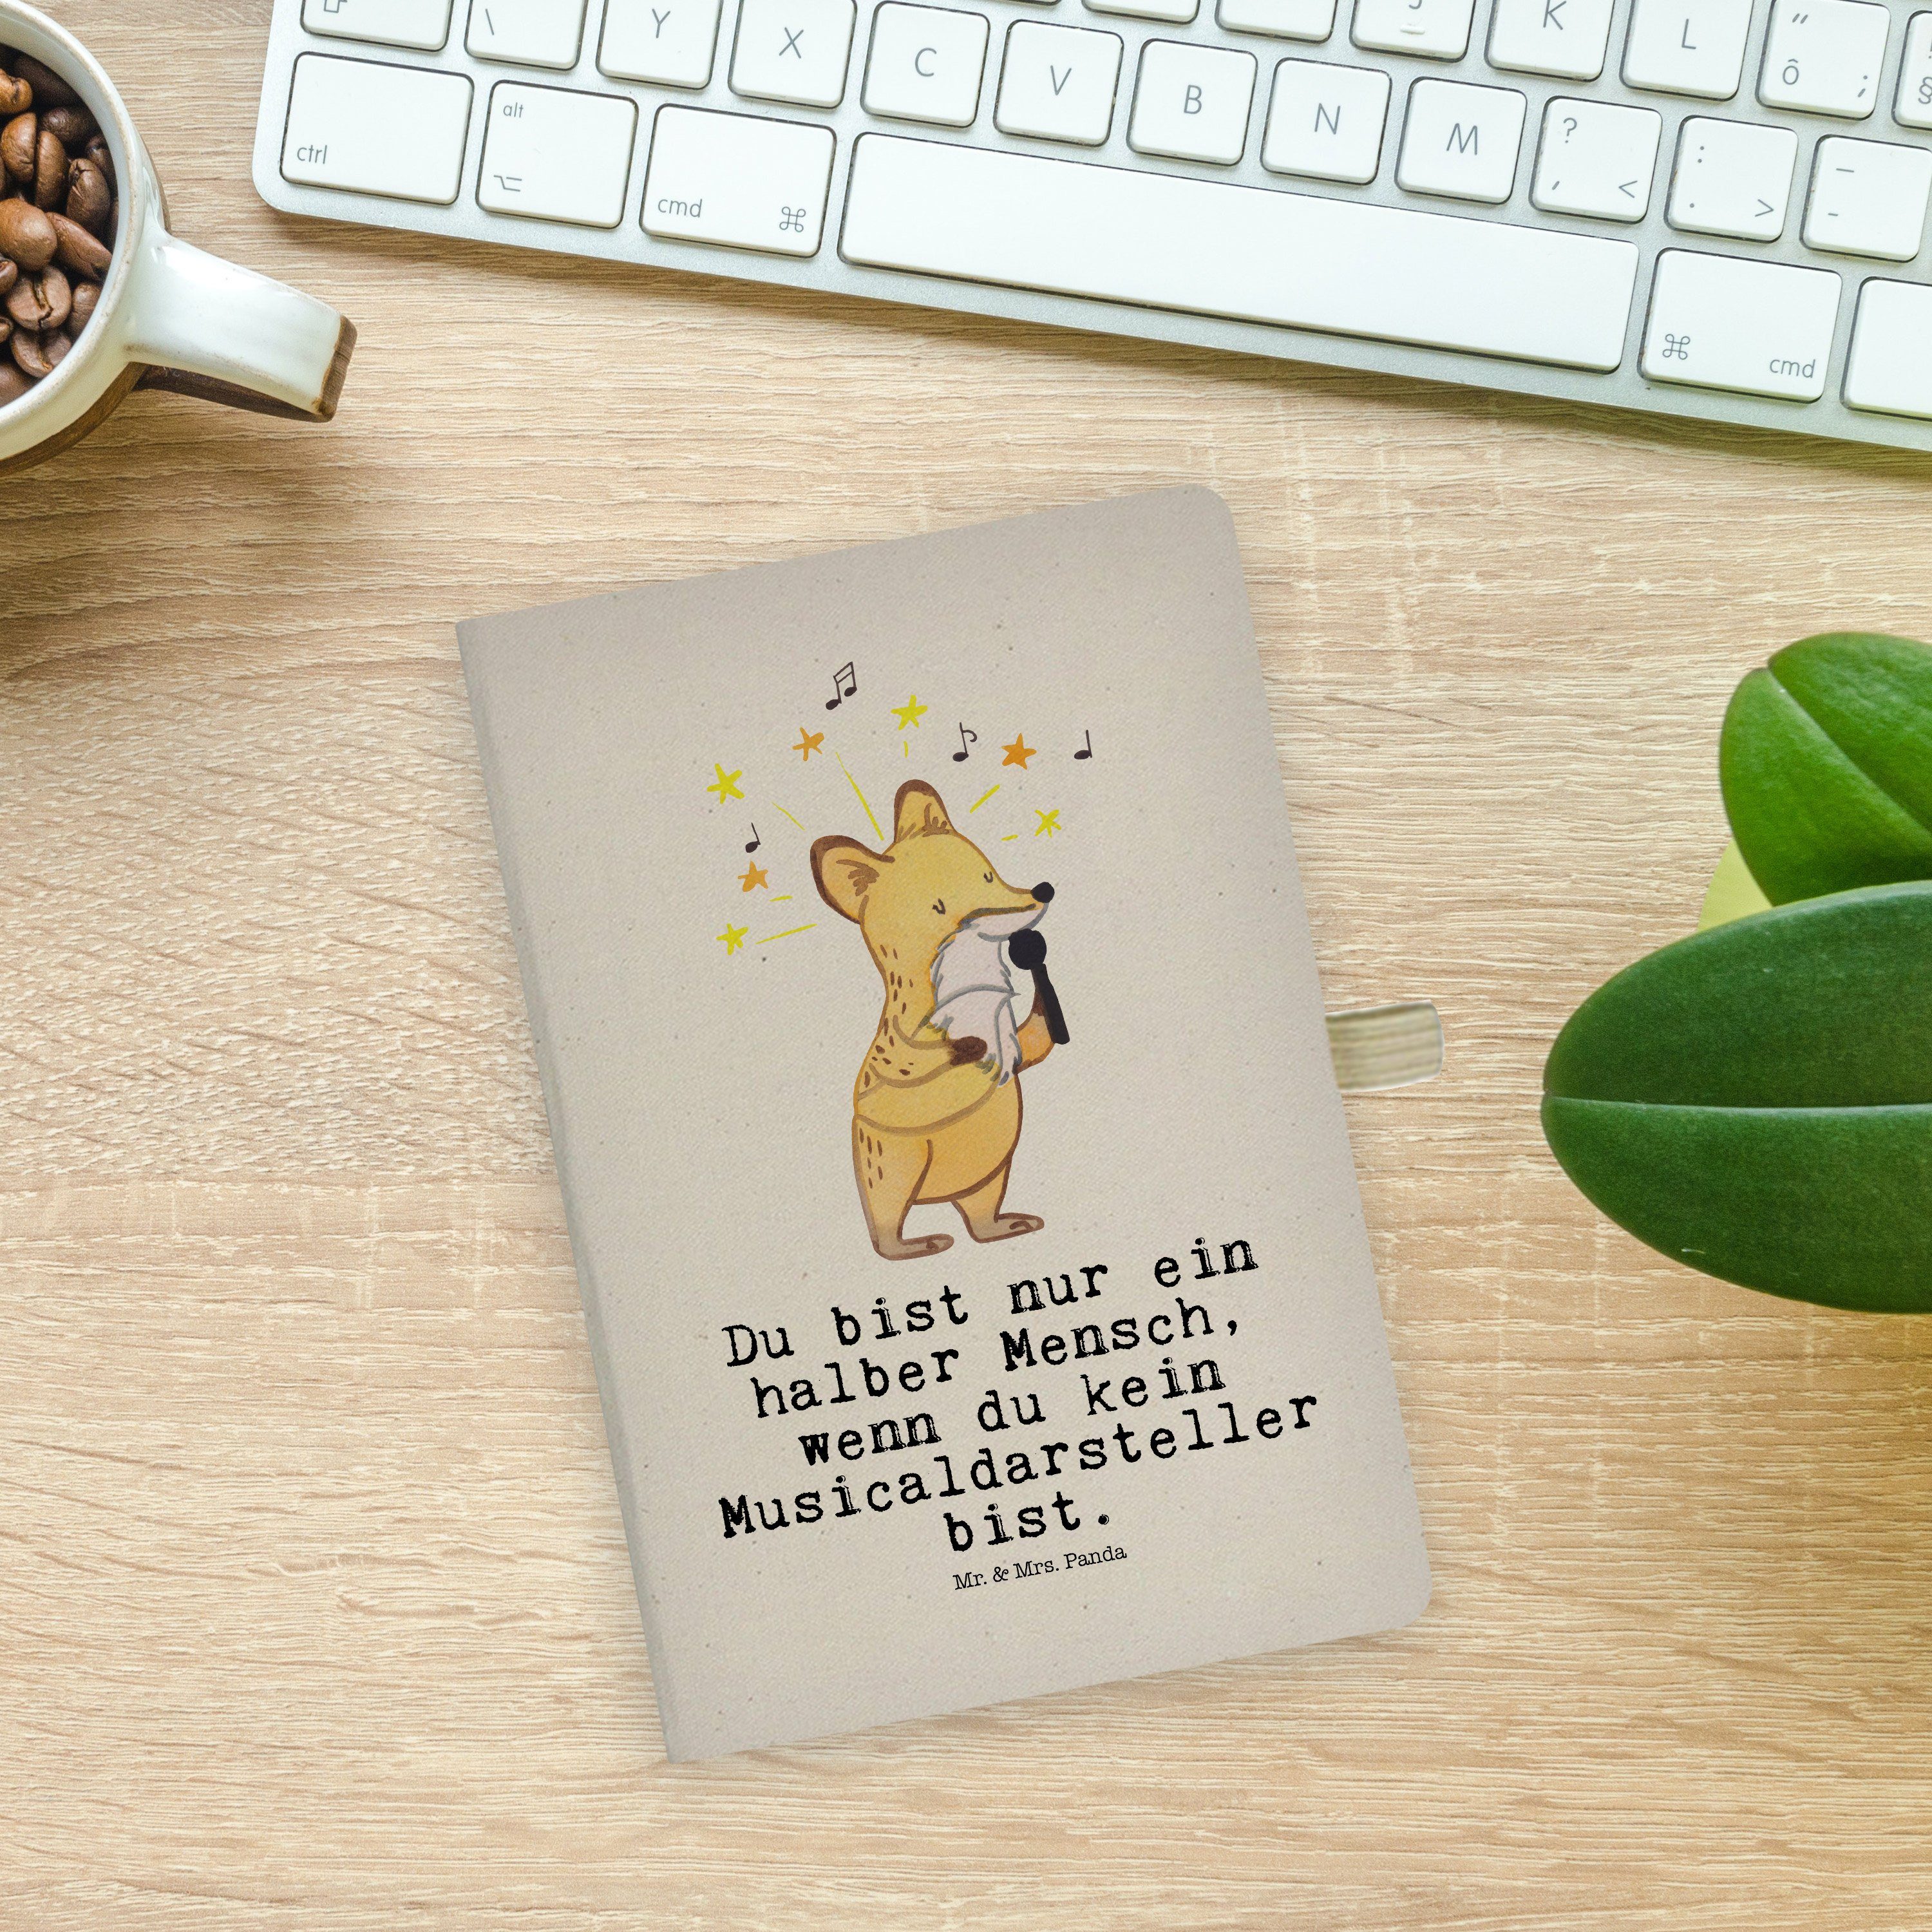 Mr. & Panda Panda Herz Mrs. Jubilä Mrs. & Transparent Notizbuch Tagebuch, - - mit Geschenk, Mr. Musicaldarsteller